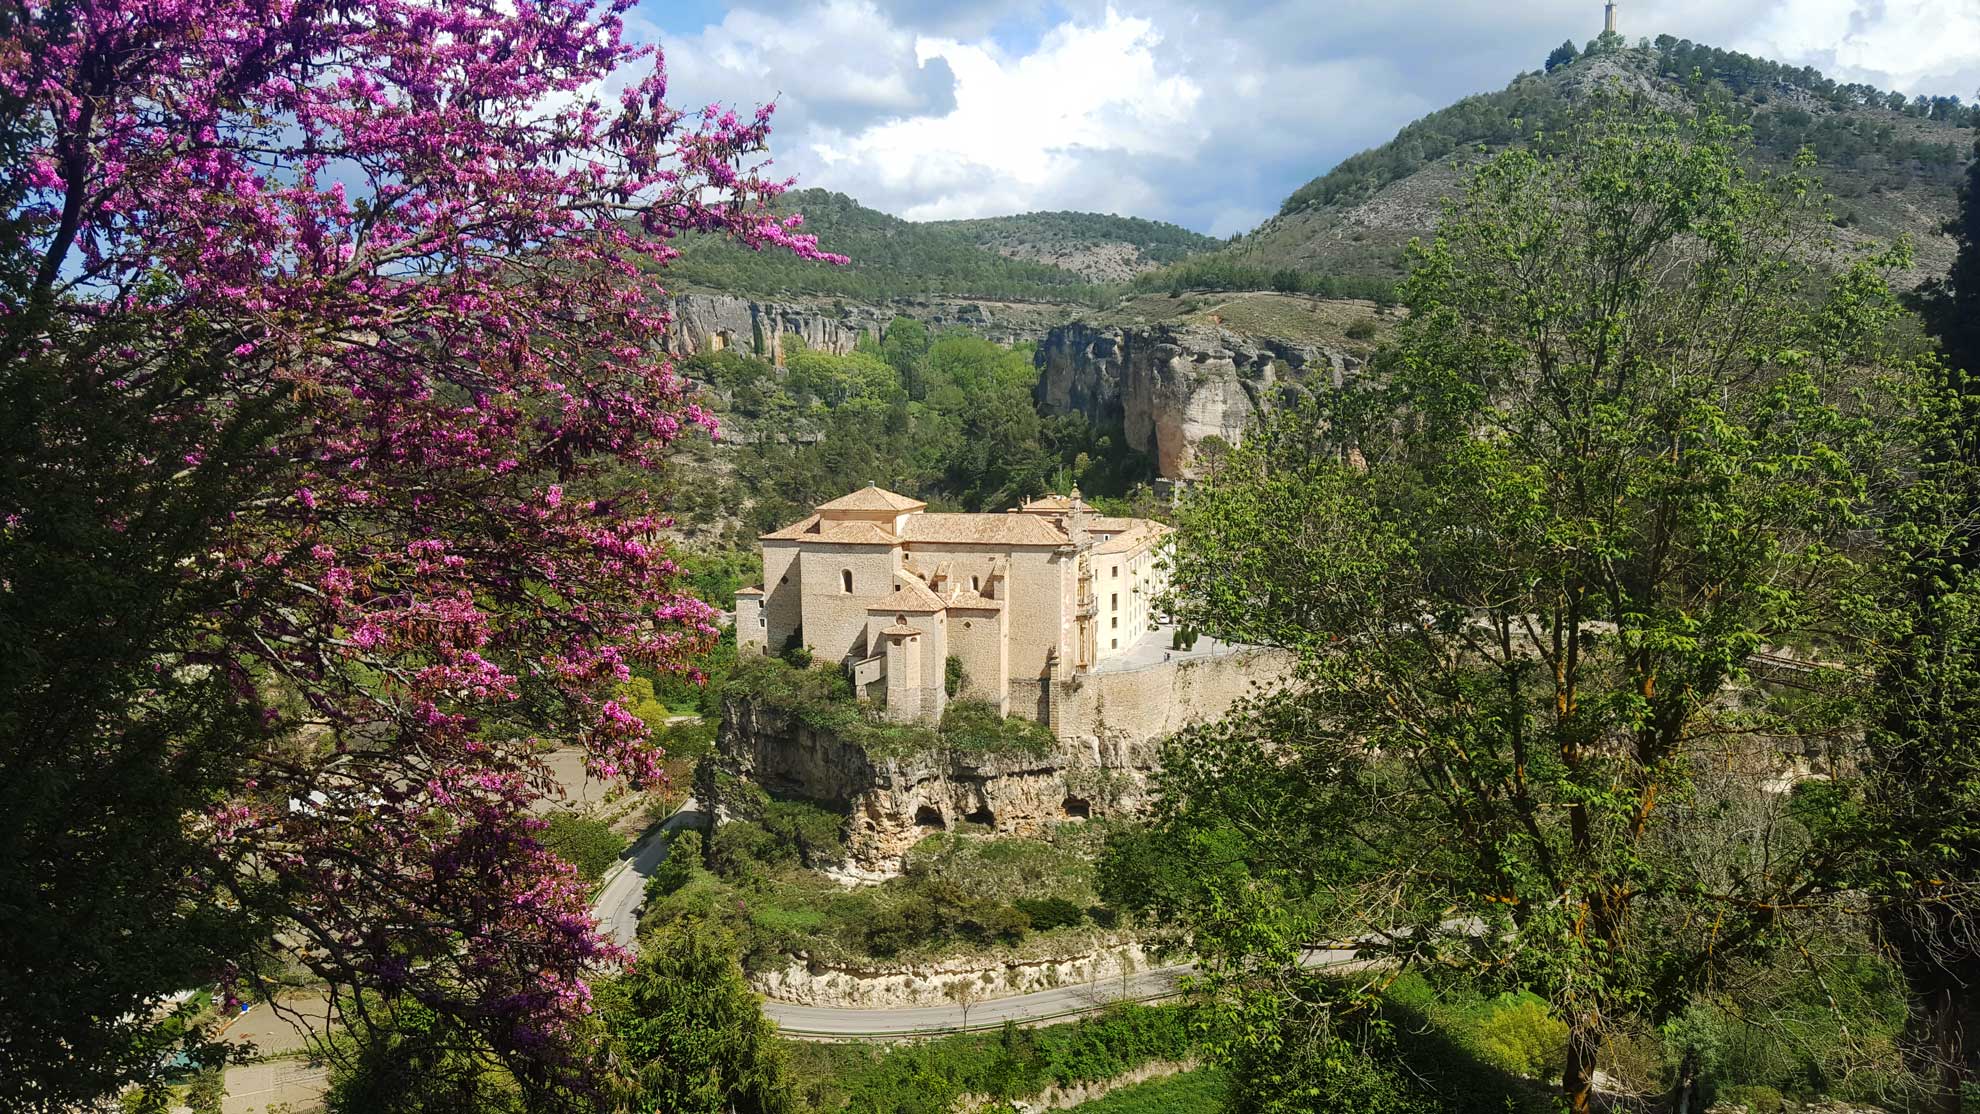 Spania. Cuenca. Utsikt mot det gamle San Pablo-klosteret, i dag hotell. Parador de Cuenca. Foto